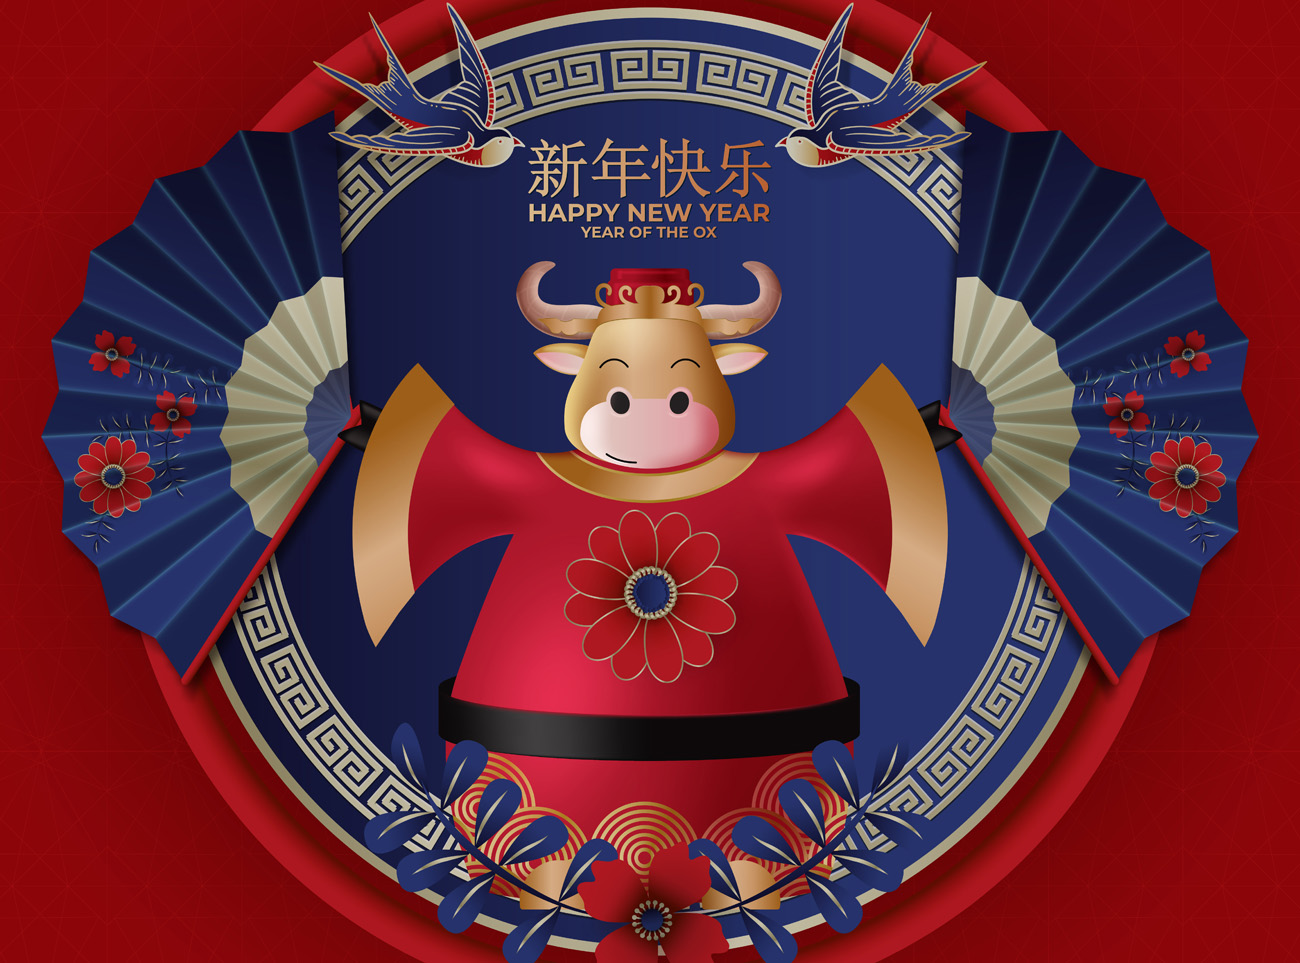 2021年中国剪纸风日式梅色春节传统装饰燕子花卉灯笼玫红色背